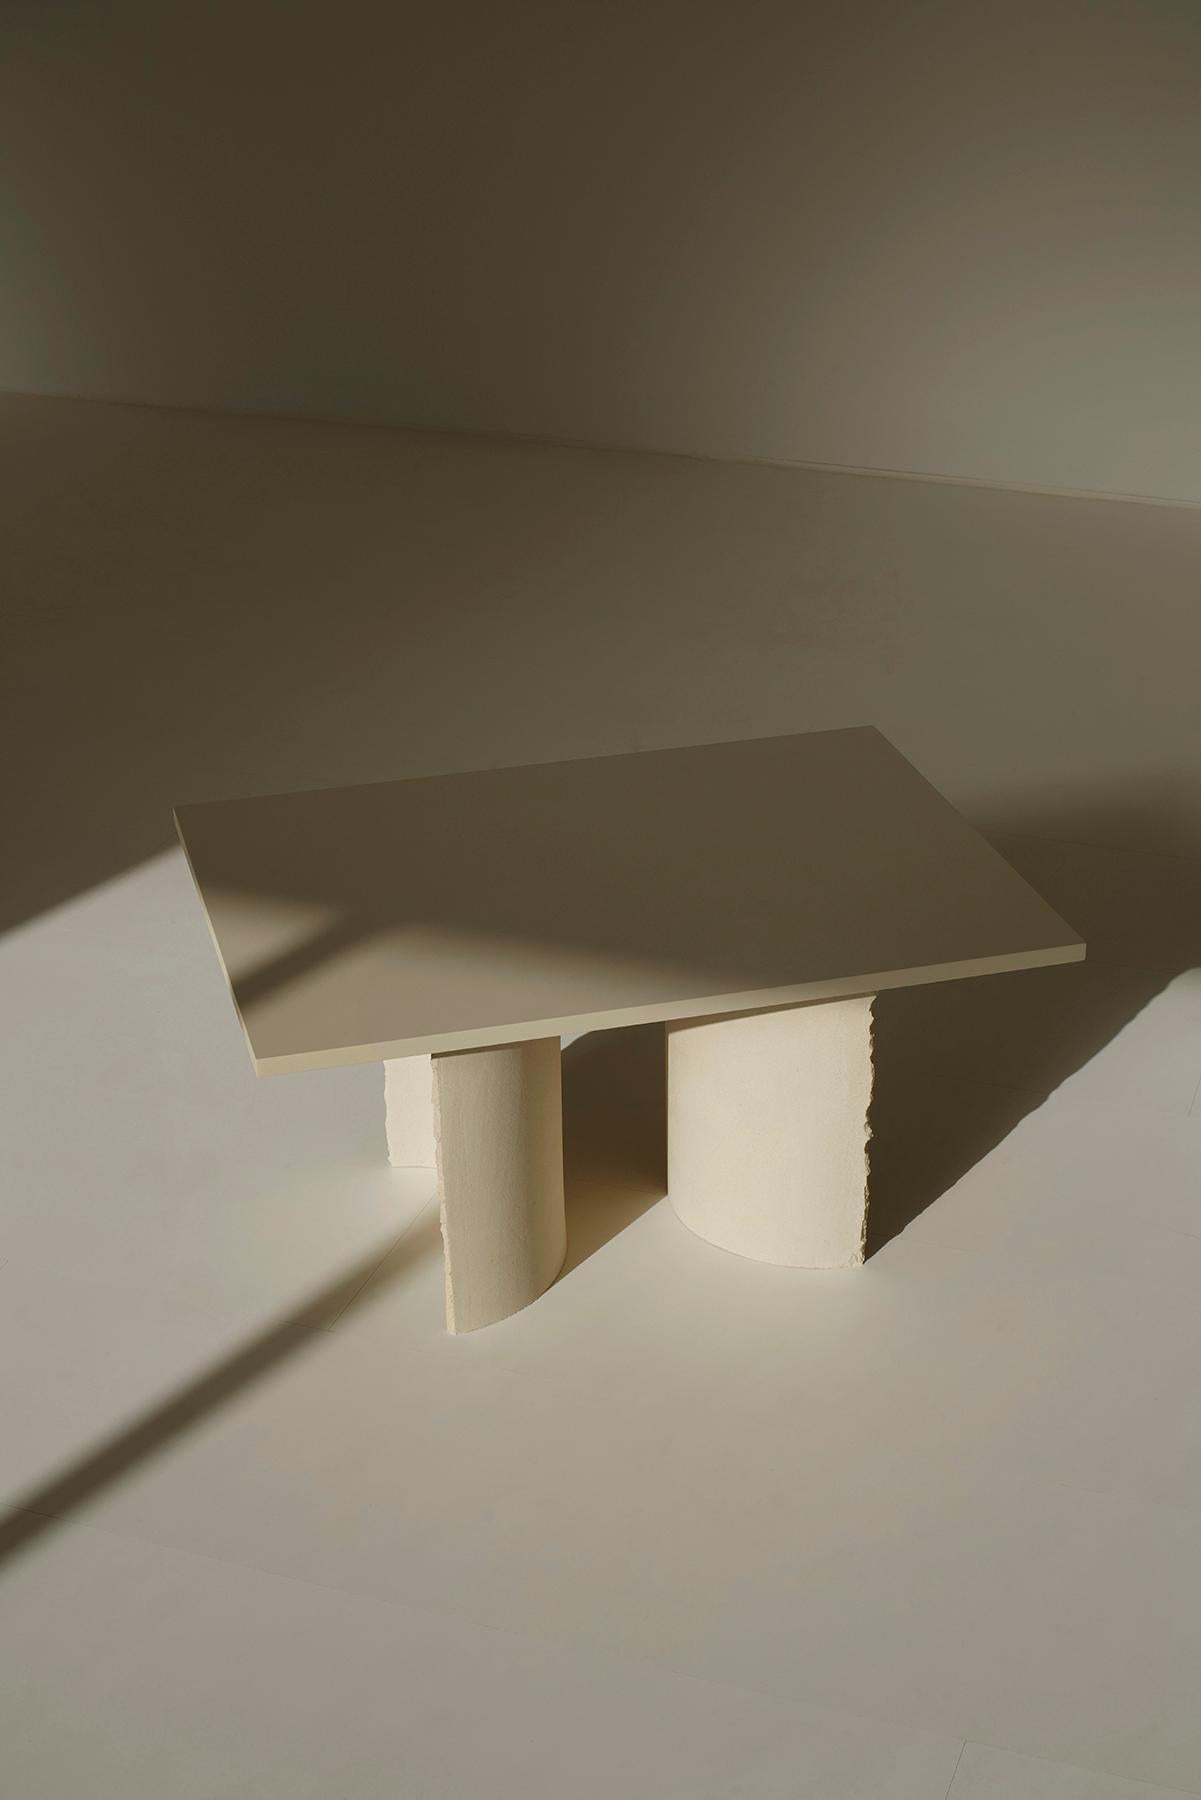 Contemporary Common Effort Hand-Sculpted Black Clay Table by Sanna Völker